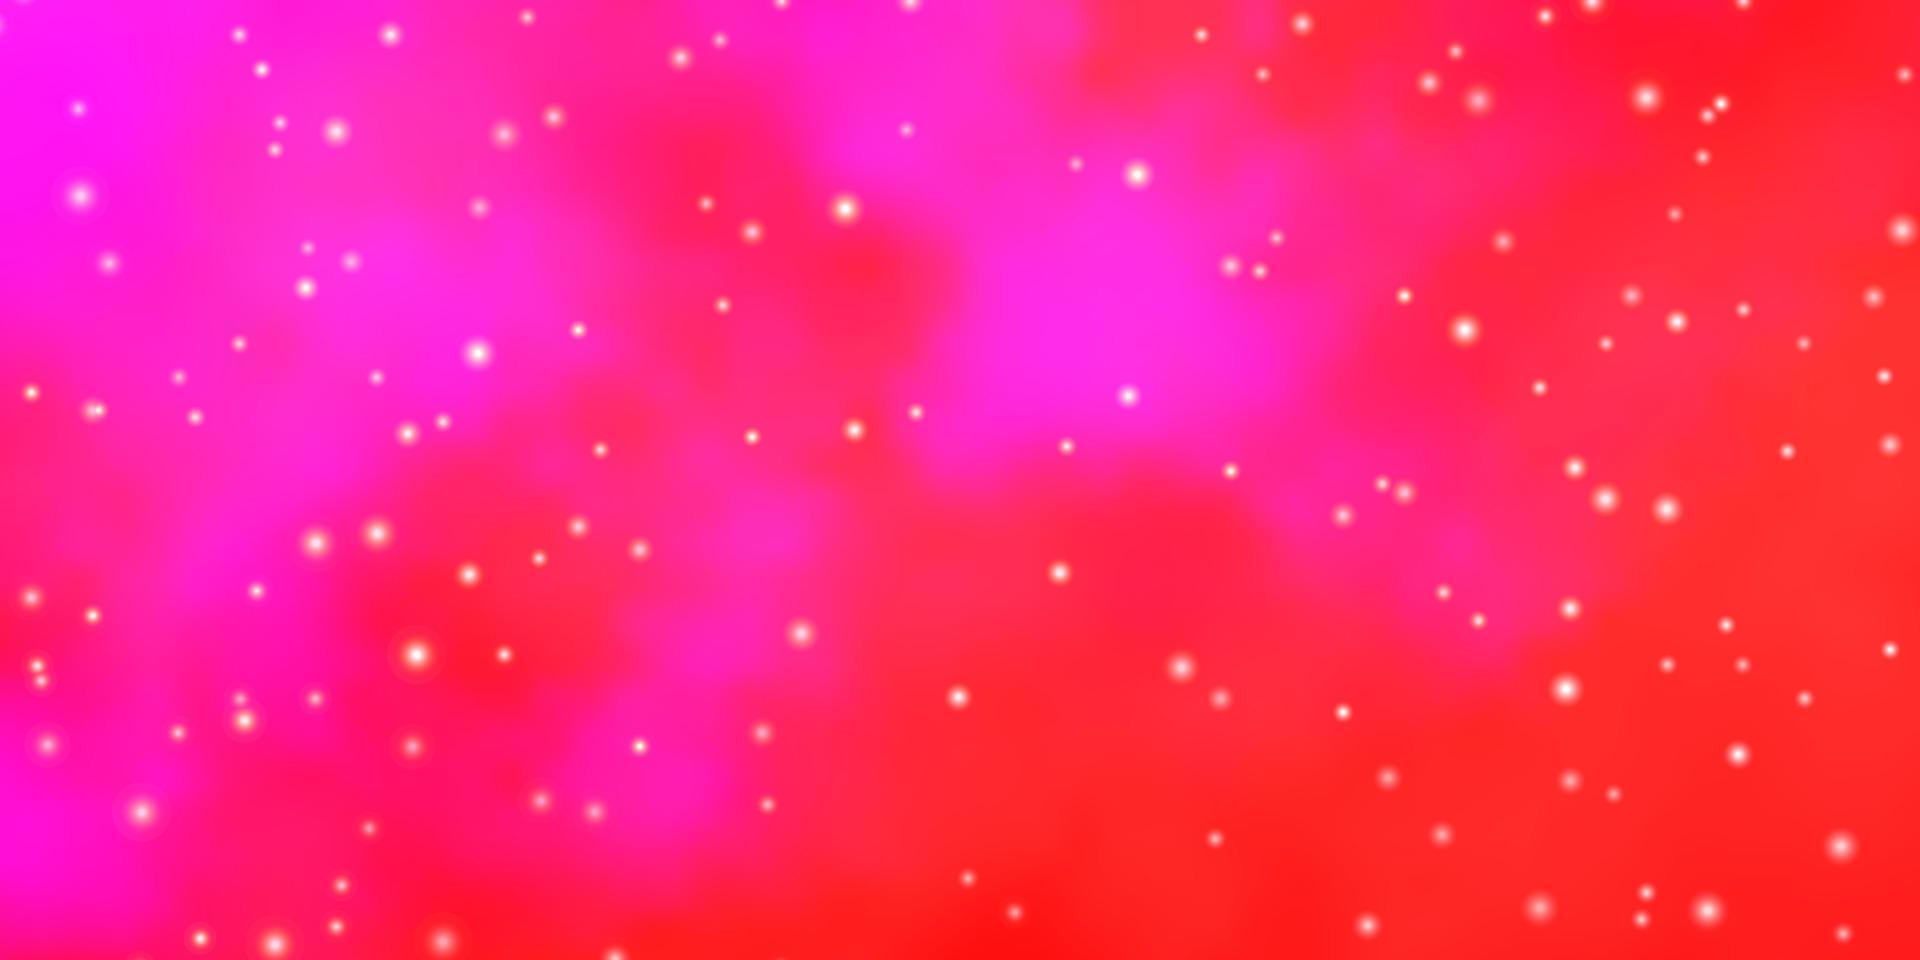 Fondo de vector rosa claro con estrellas grandes y pequeñas.